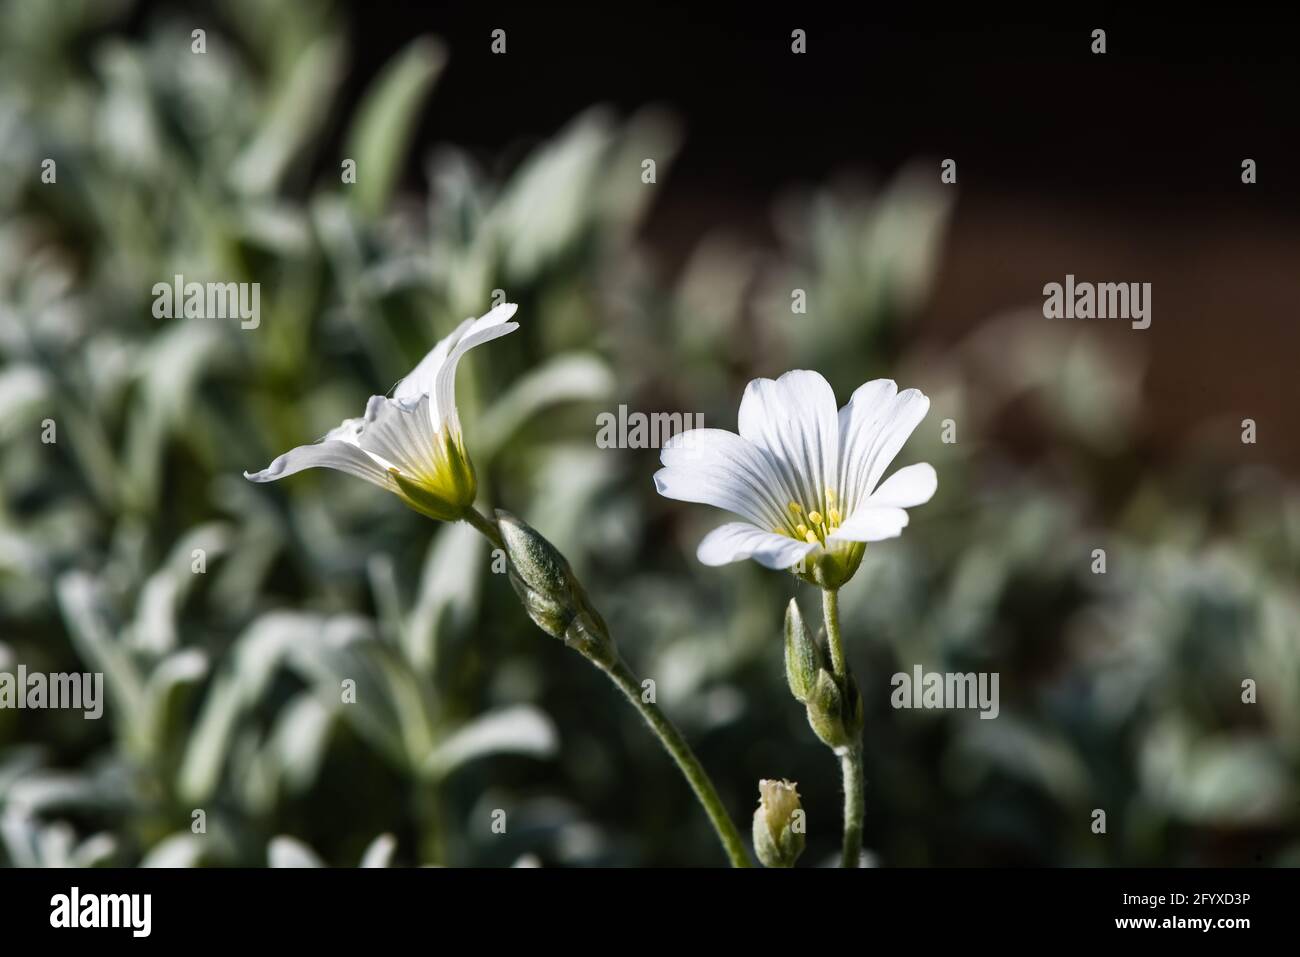 Snow-in-Summer or Cerastium tomentosum. Stock Photo